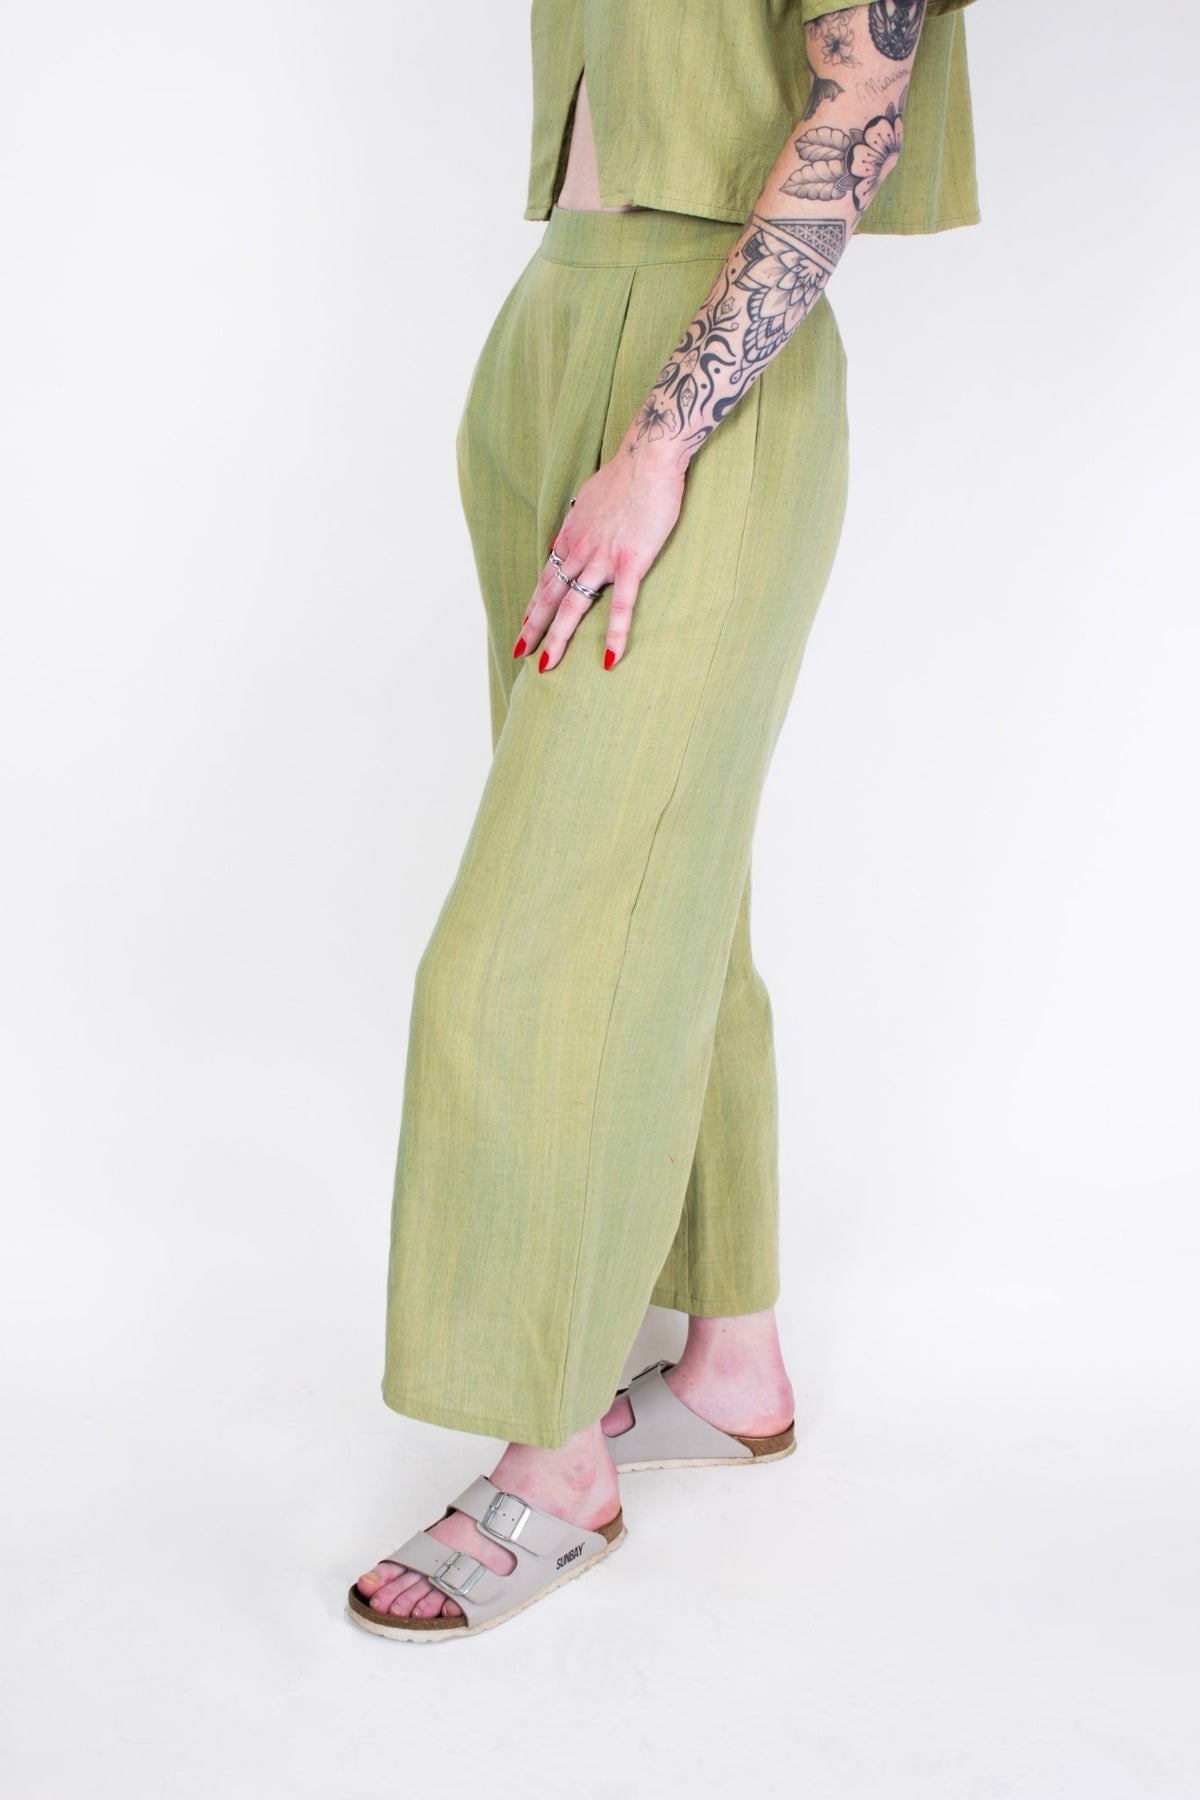 Pantalon SAGARA - Coton Kala - Imprimé Green Kala - Pantalon - Azaadi, la mode responsable accessible